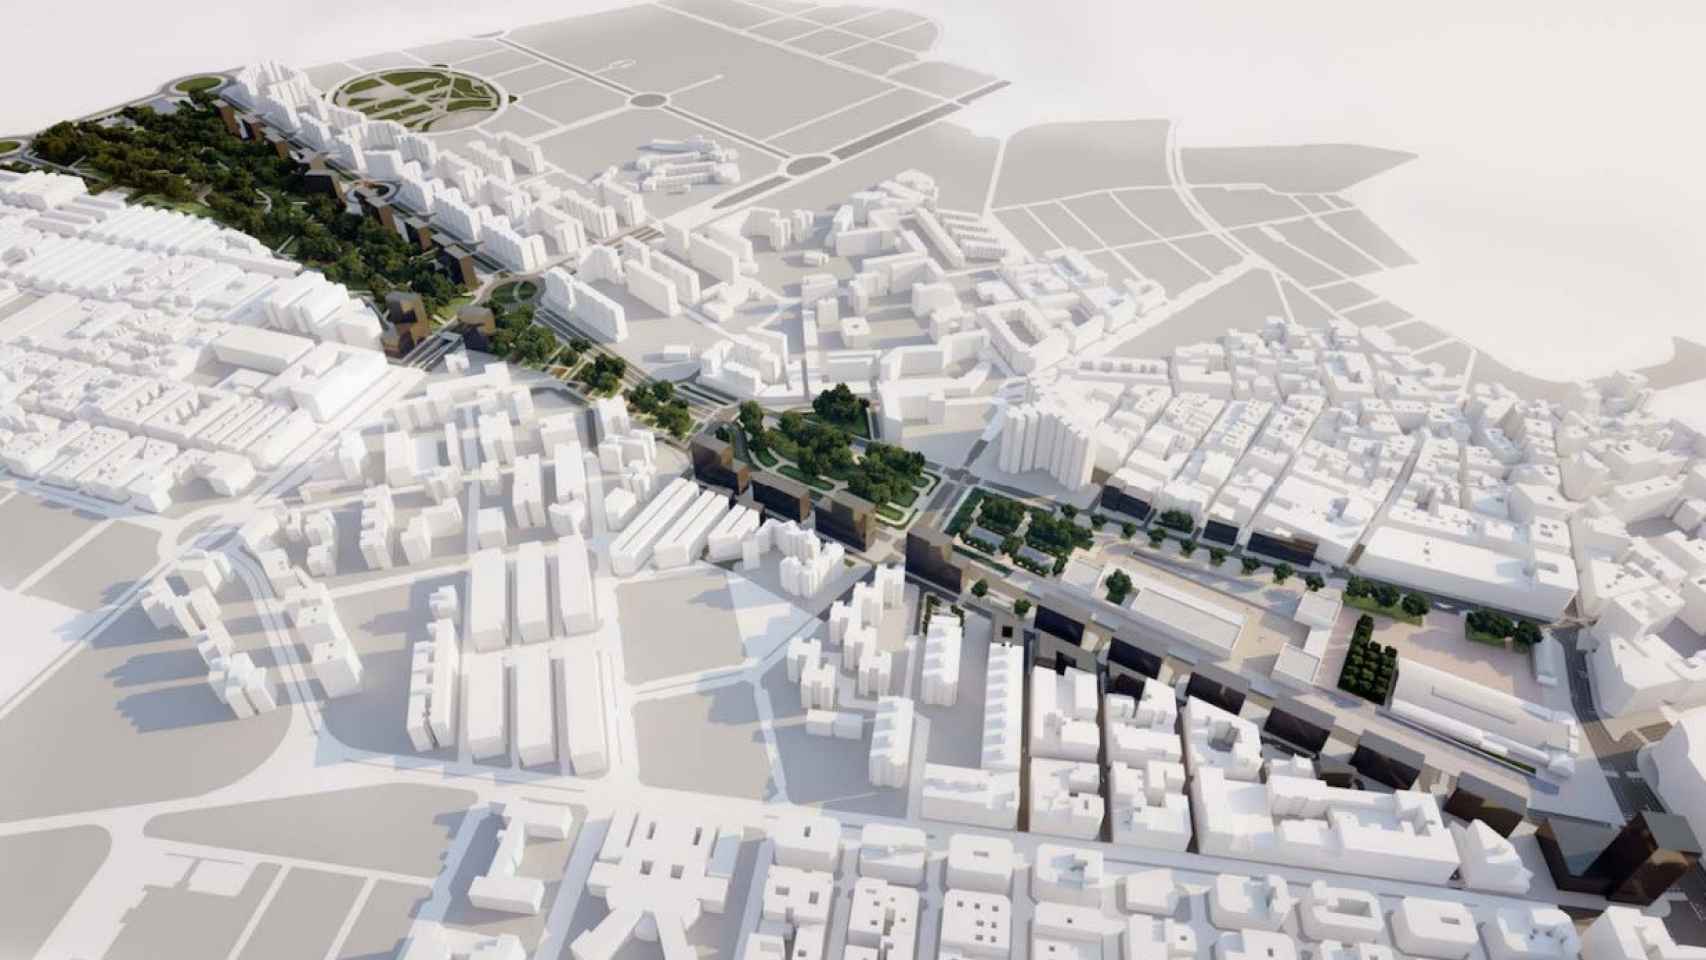 Proyecto de estación intermodal y parque central en la ciudad de Alicante.